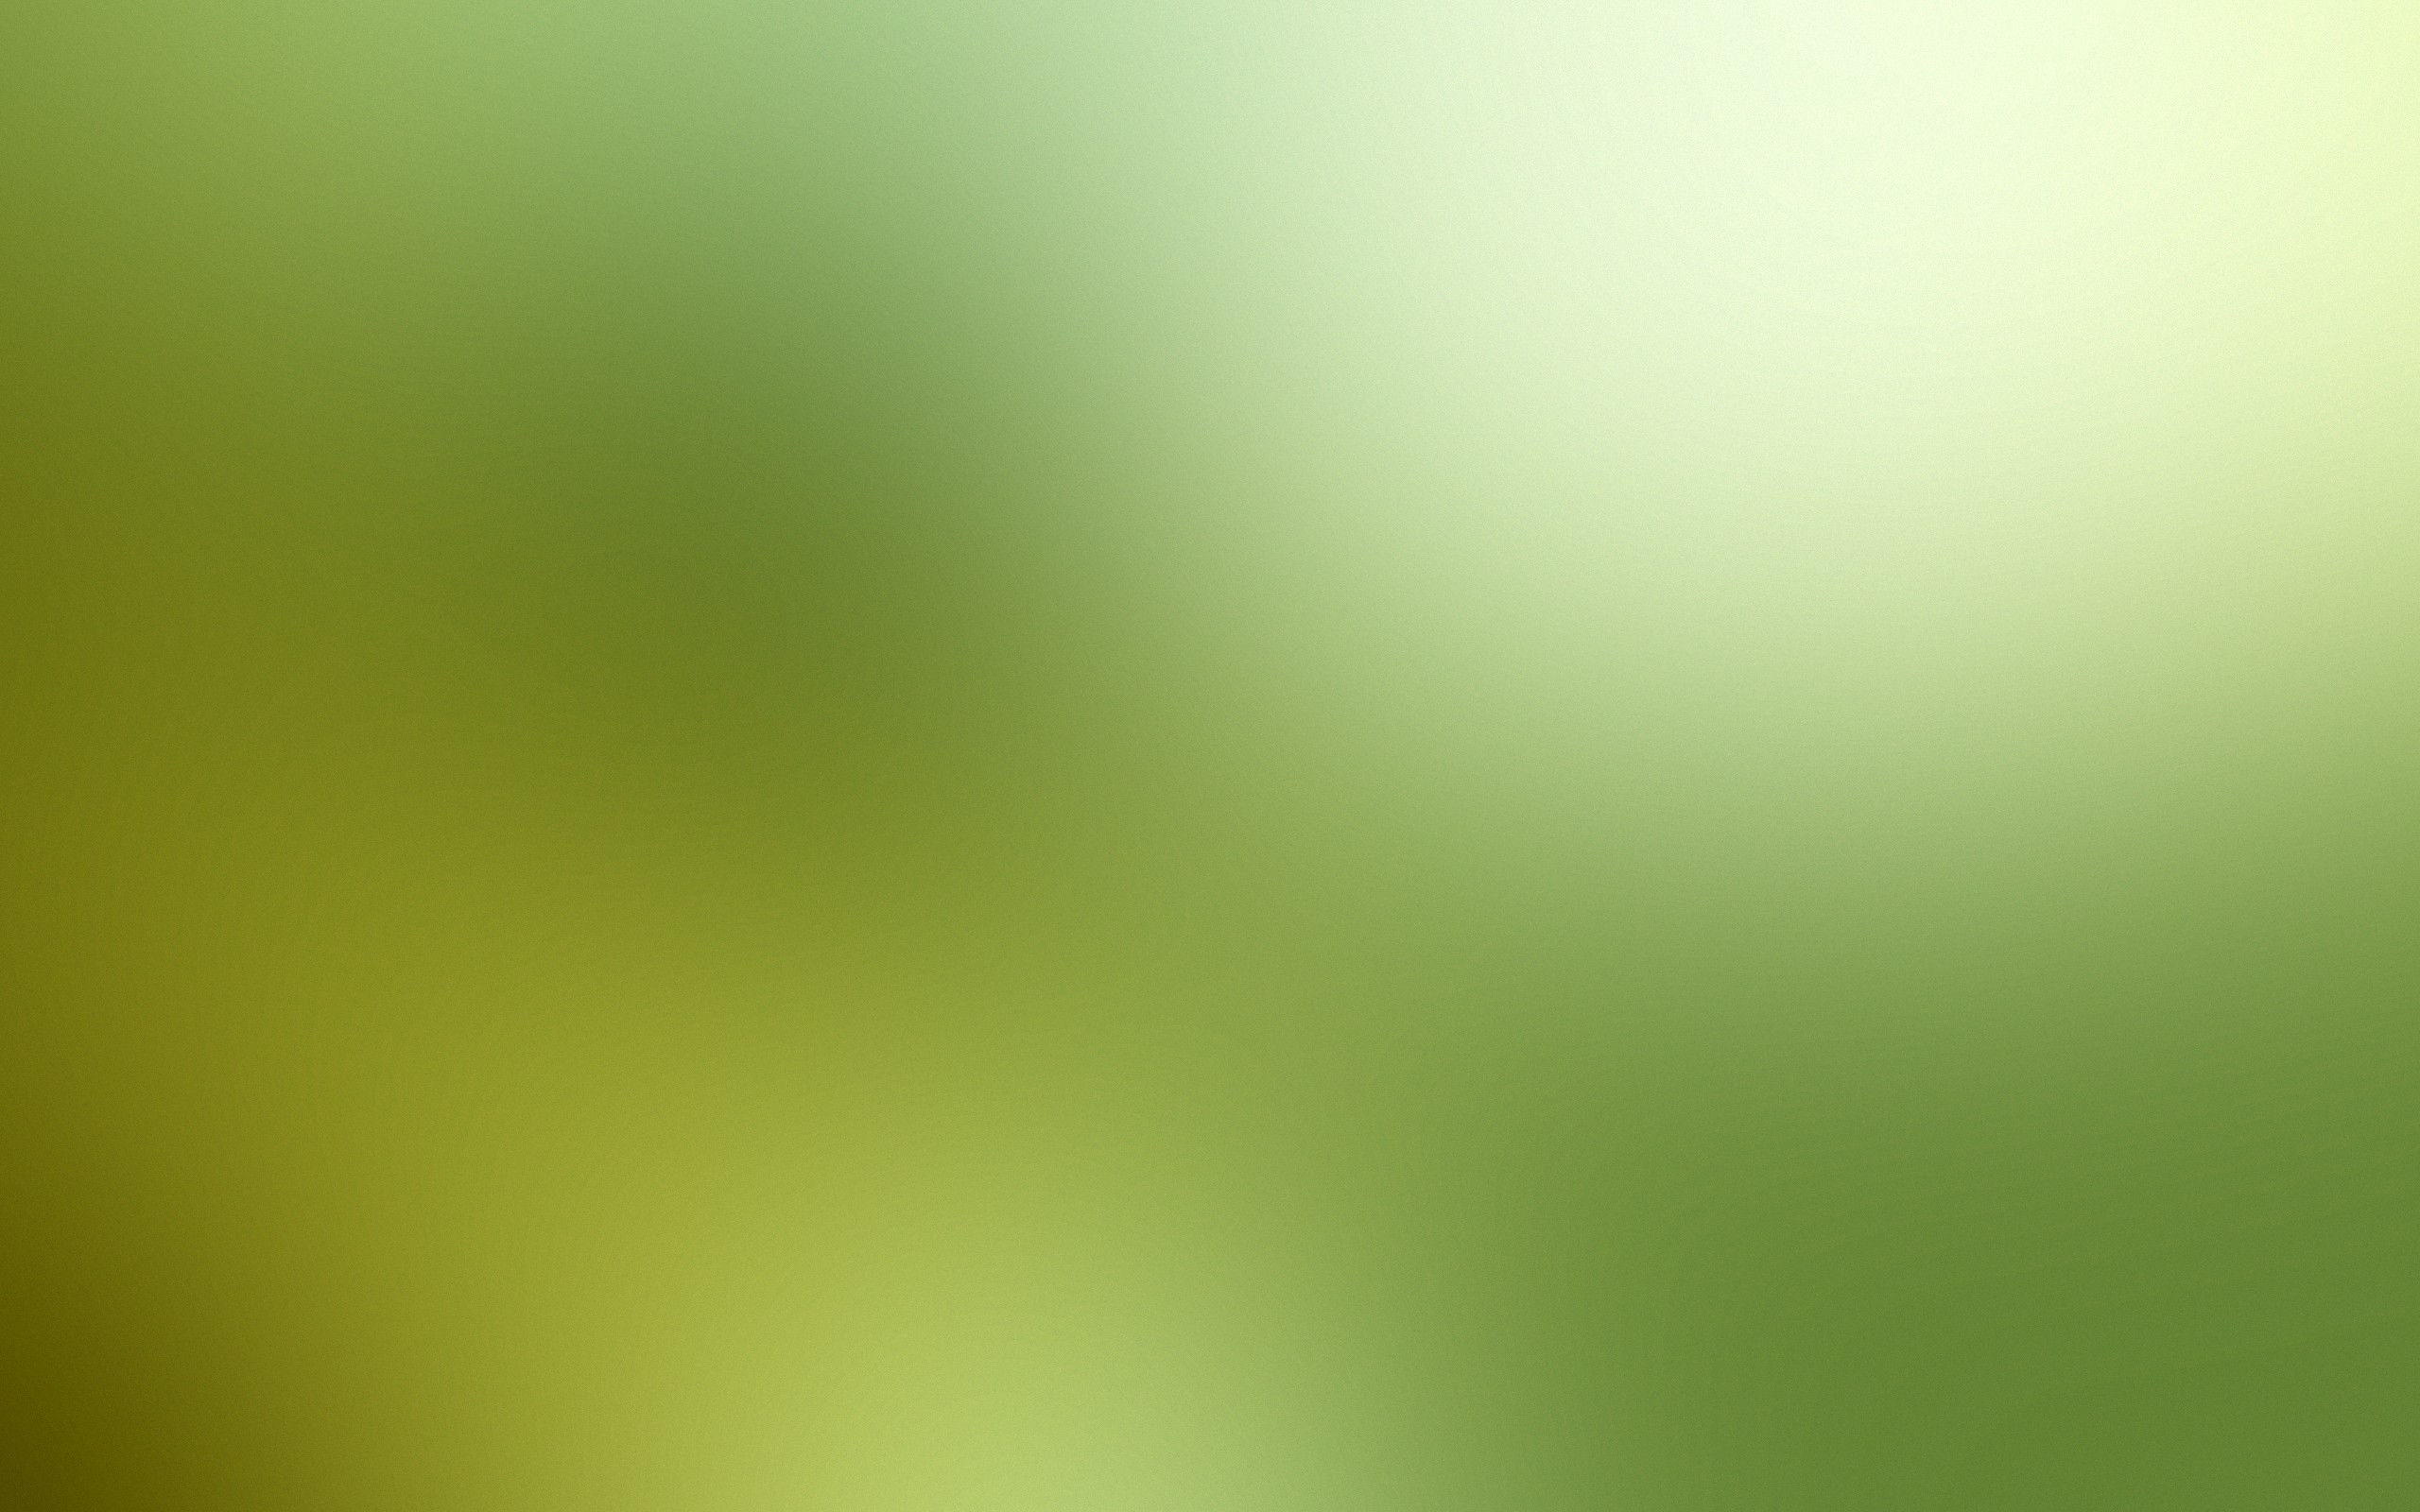 Hình nền mờ Gaussian màu xanh lá cây sẽ làm cho màn hình của bạn trở nên tươi tắn và đầy sức sống. Hình ảnh này dường như như được chụp tại một khu rừng xanh mát, khiến bạn cảm thấy như đang đứng trên cỏ thật bên dưới. Hãy xem và cảm nhận sự tươi mới của hình nền này nhé!